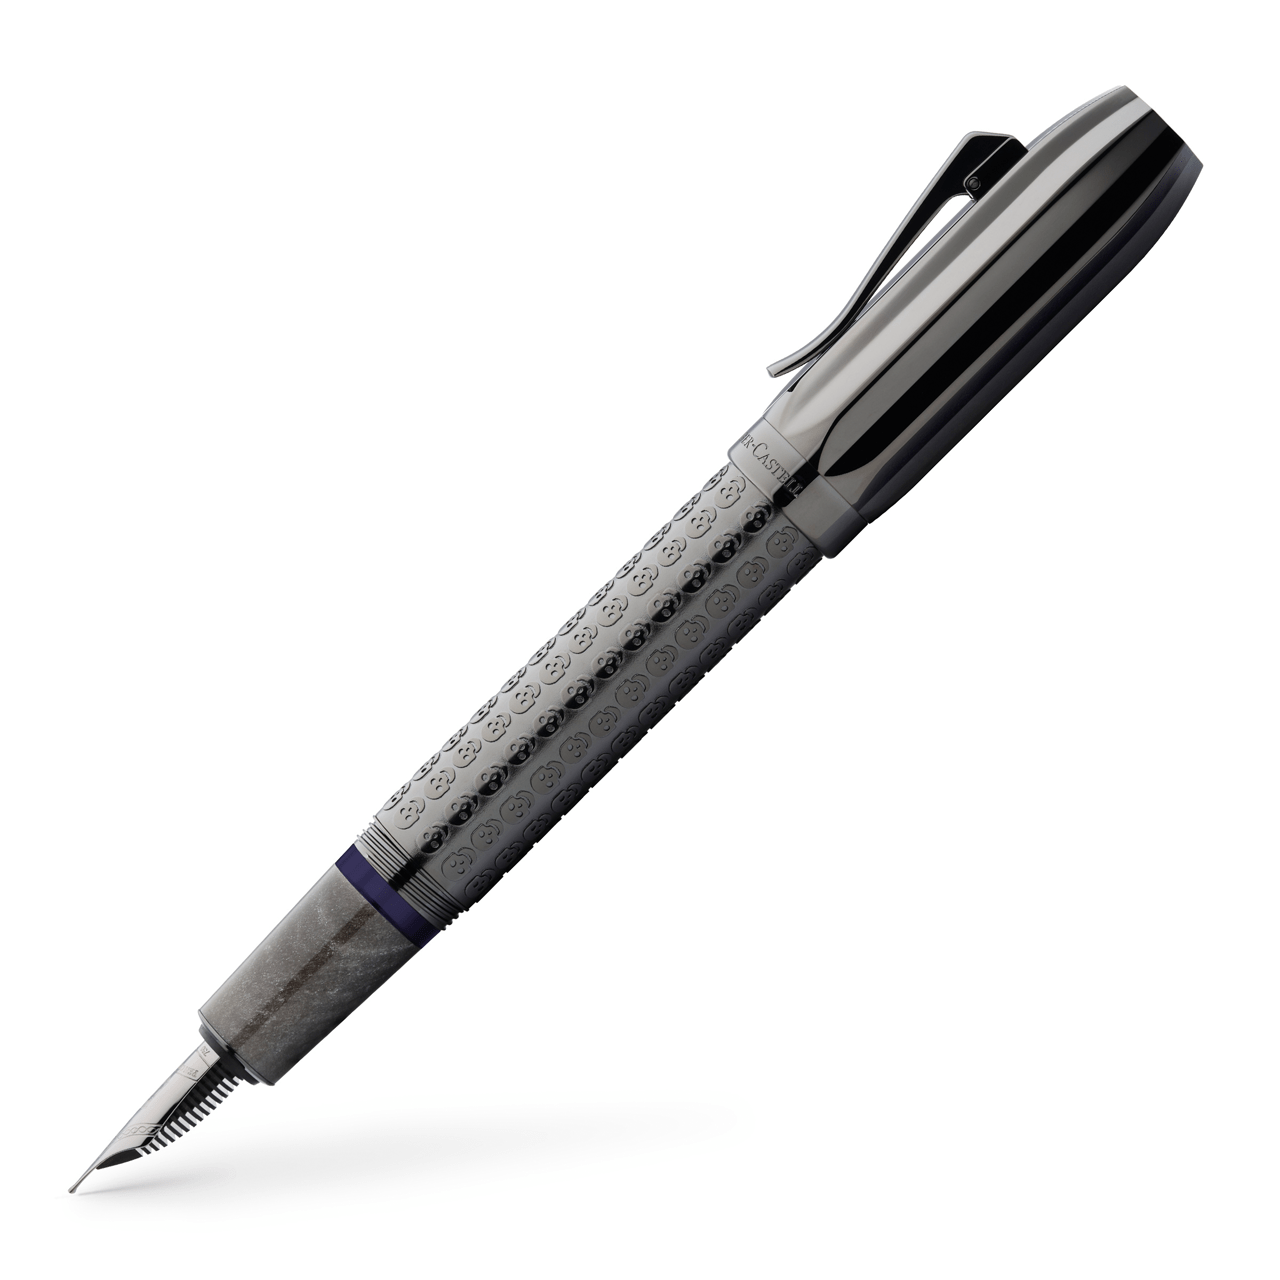 Graf-von-Faber-Castell - Penna stilografica Pen of the Year 2022 M